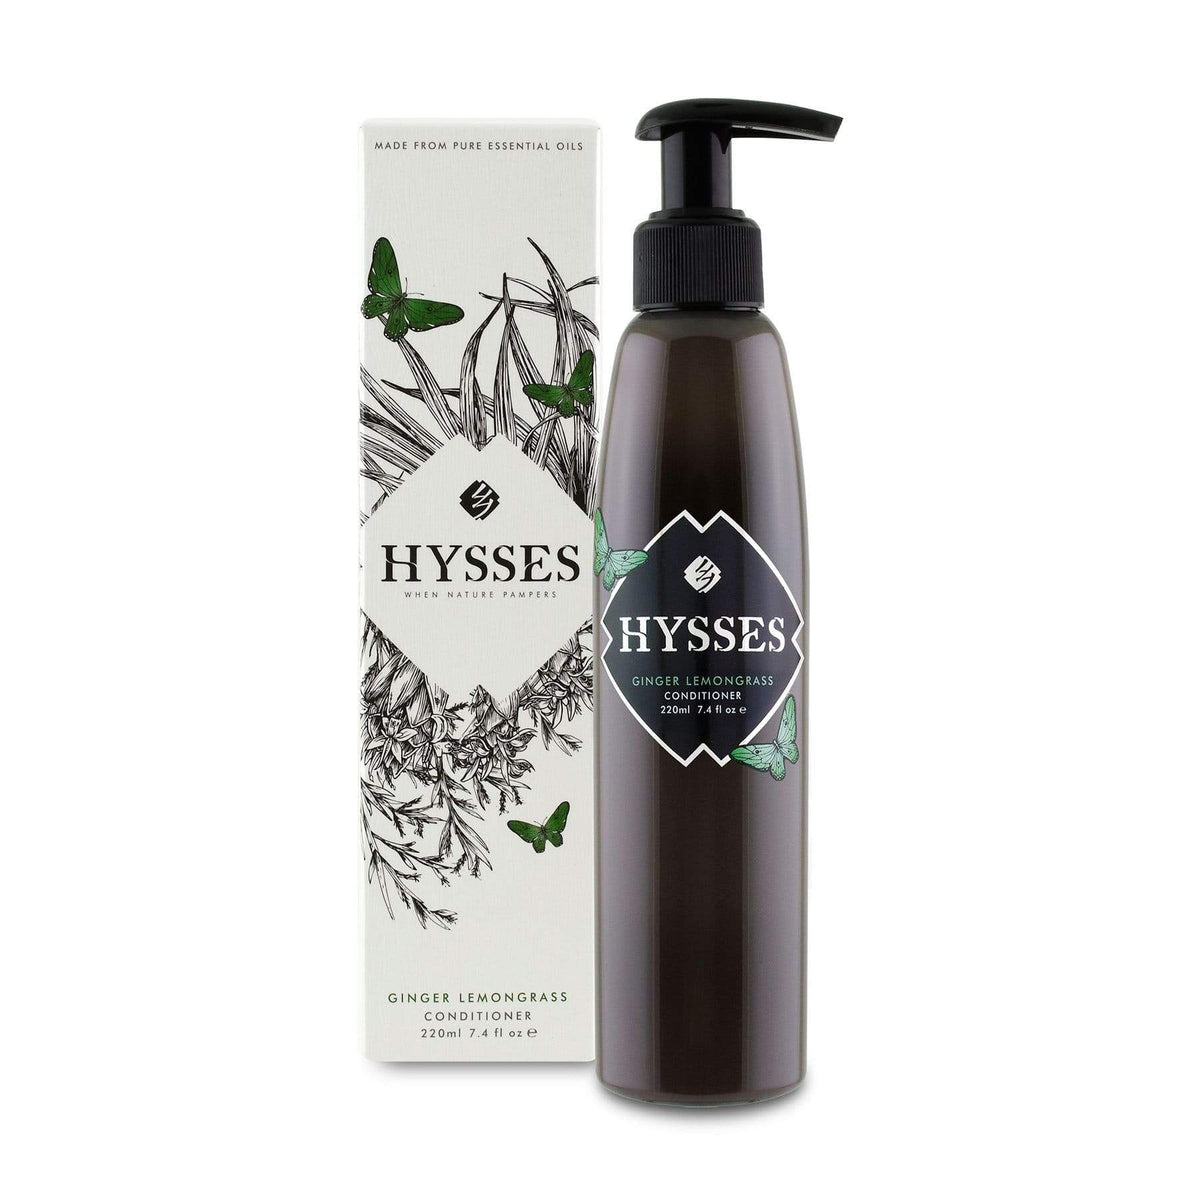 Hysses Hair Care 220ml Conditioner Ginger Lemongrass